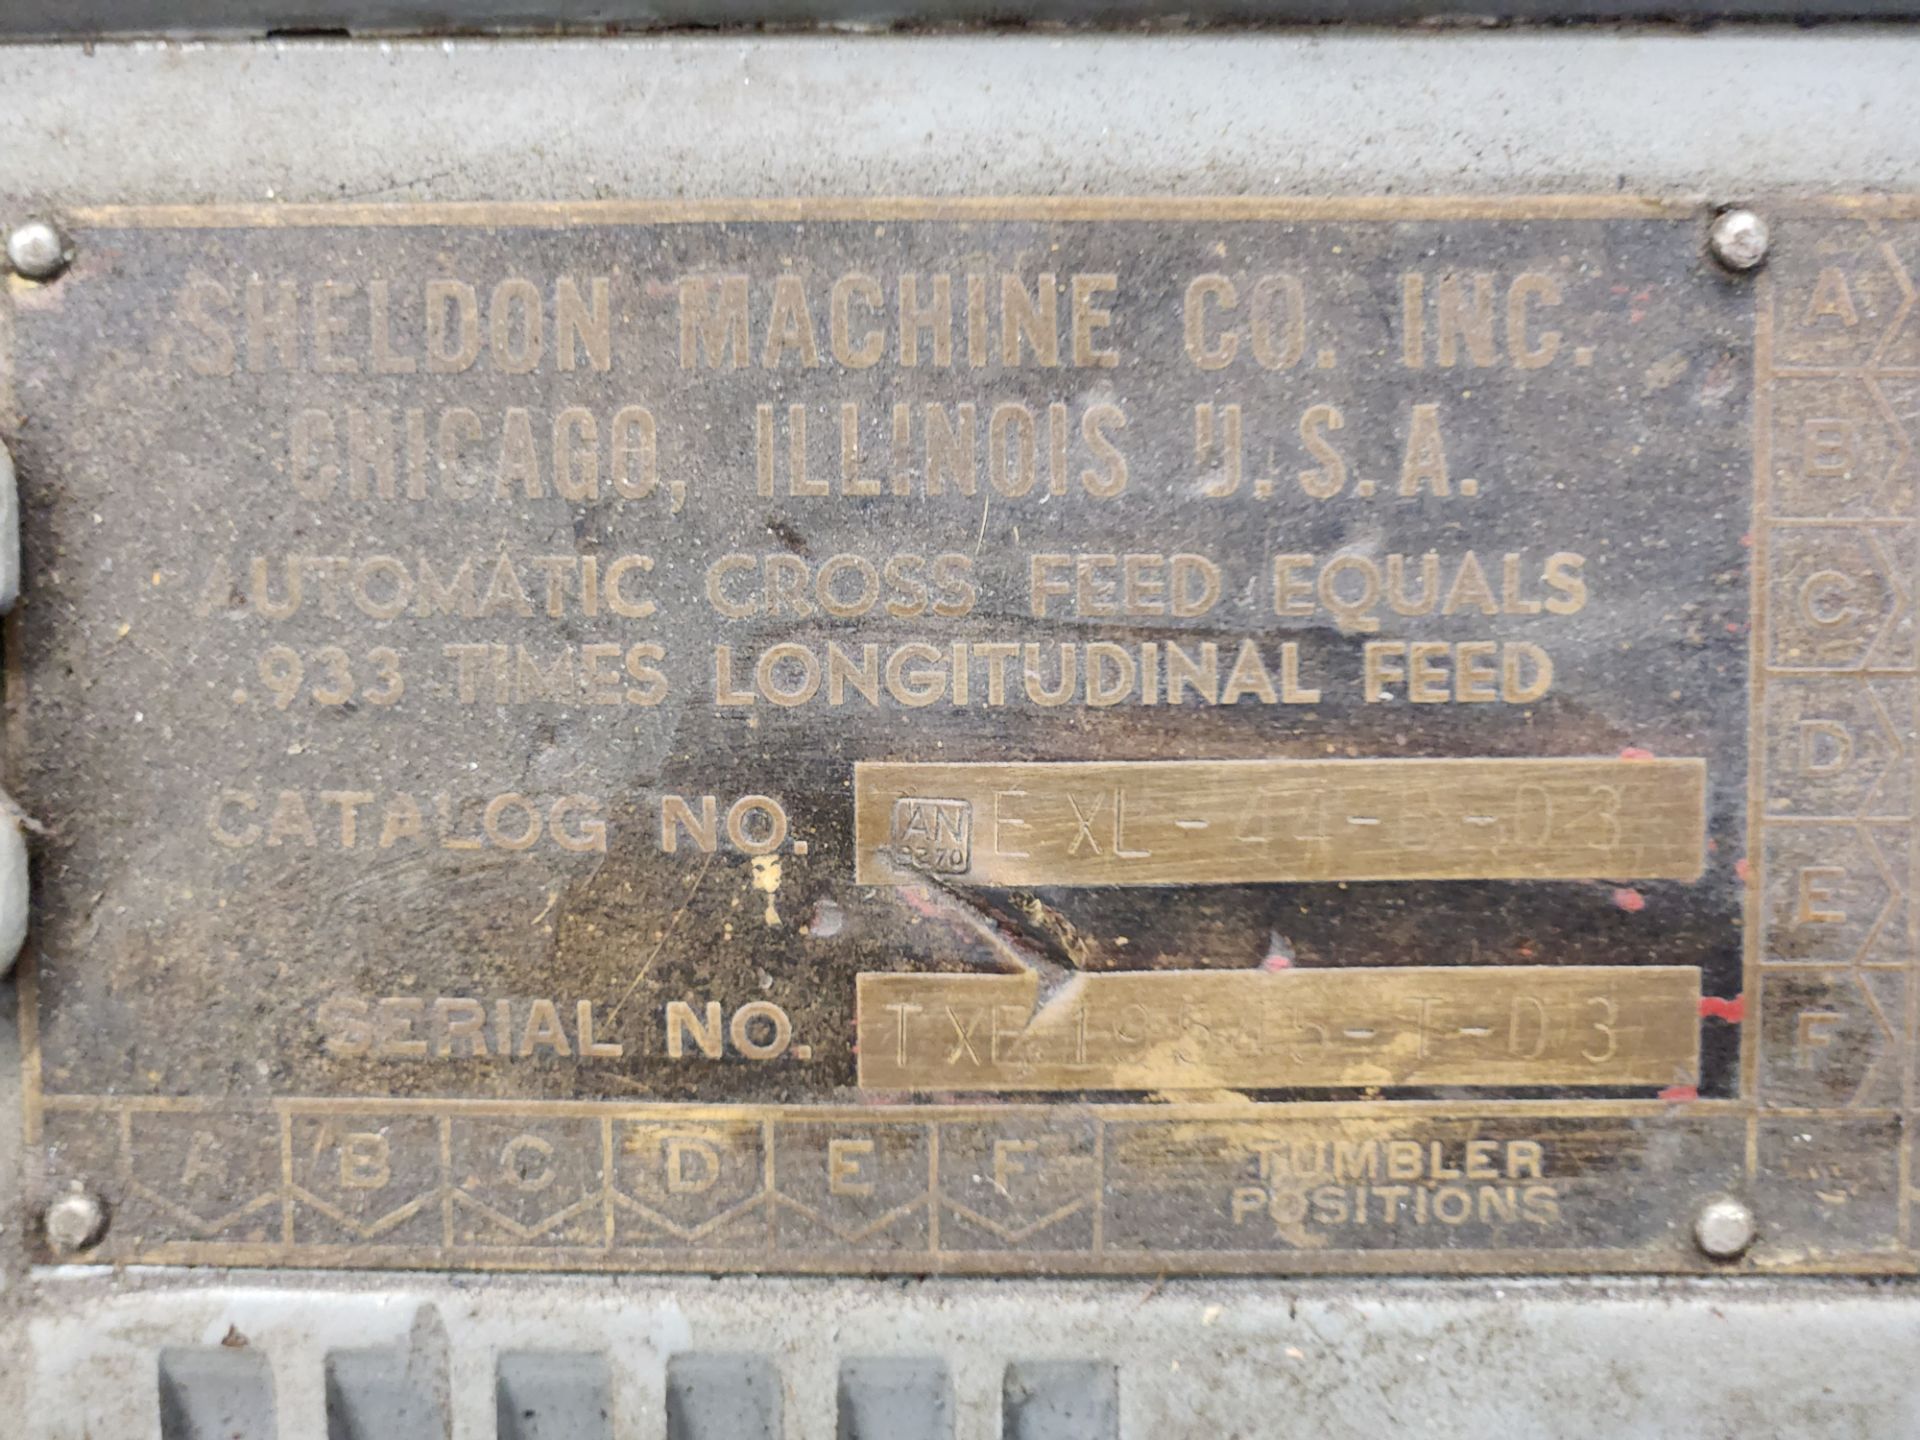 Sheldon Machine Co Lathe - Image 5 of 8